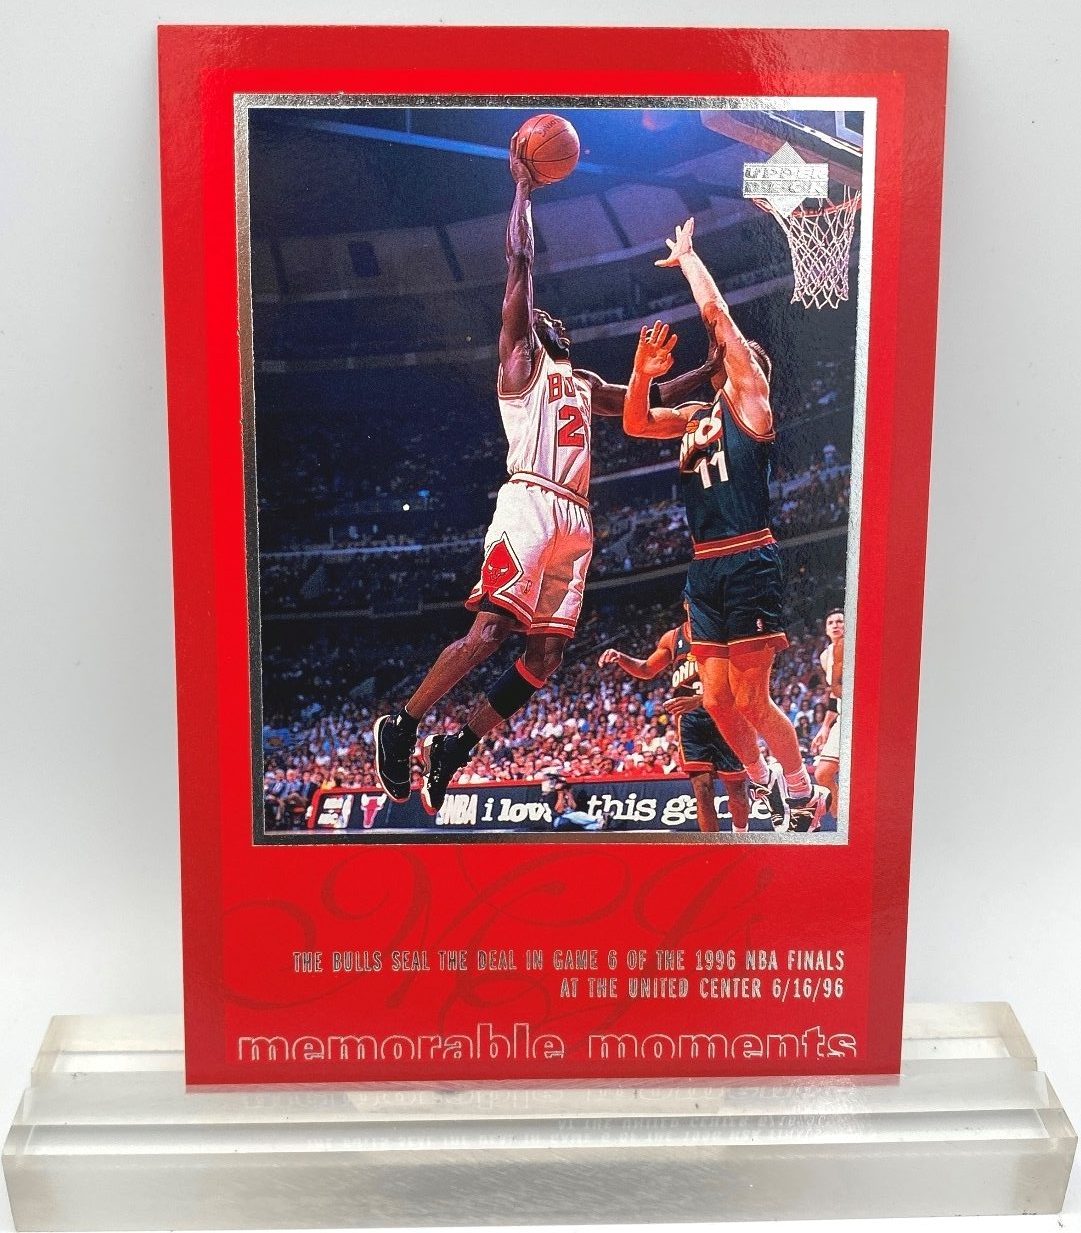 1997 Upper Deck Michael Jordan Championship Journals #18 Michael Jordan  MOMENTS